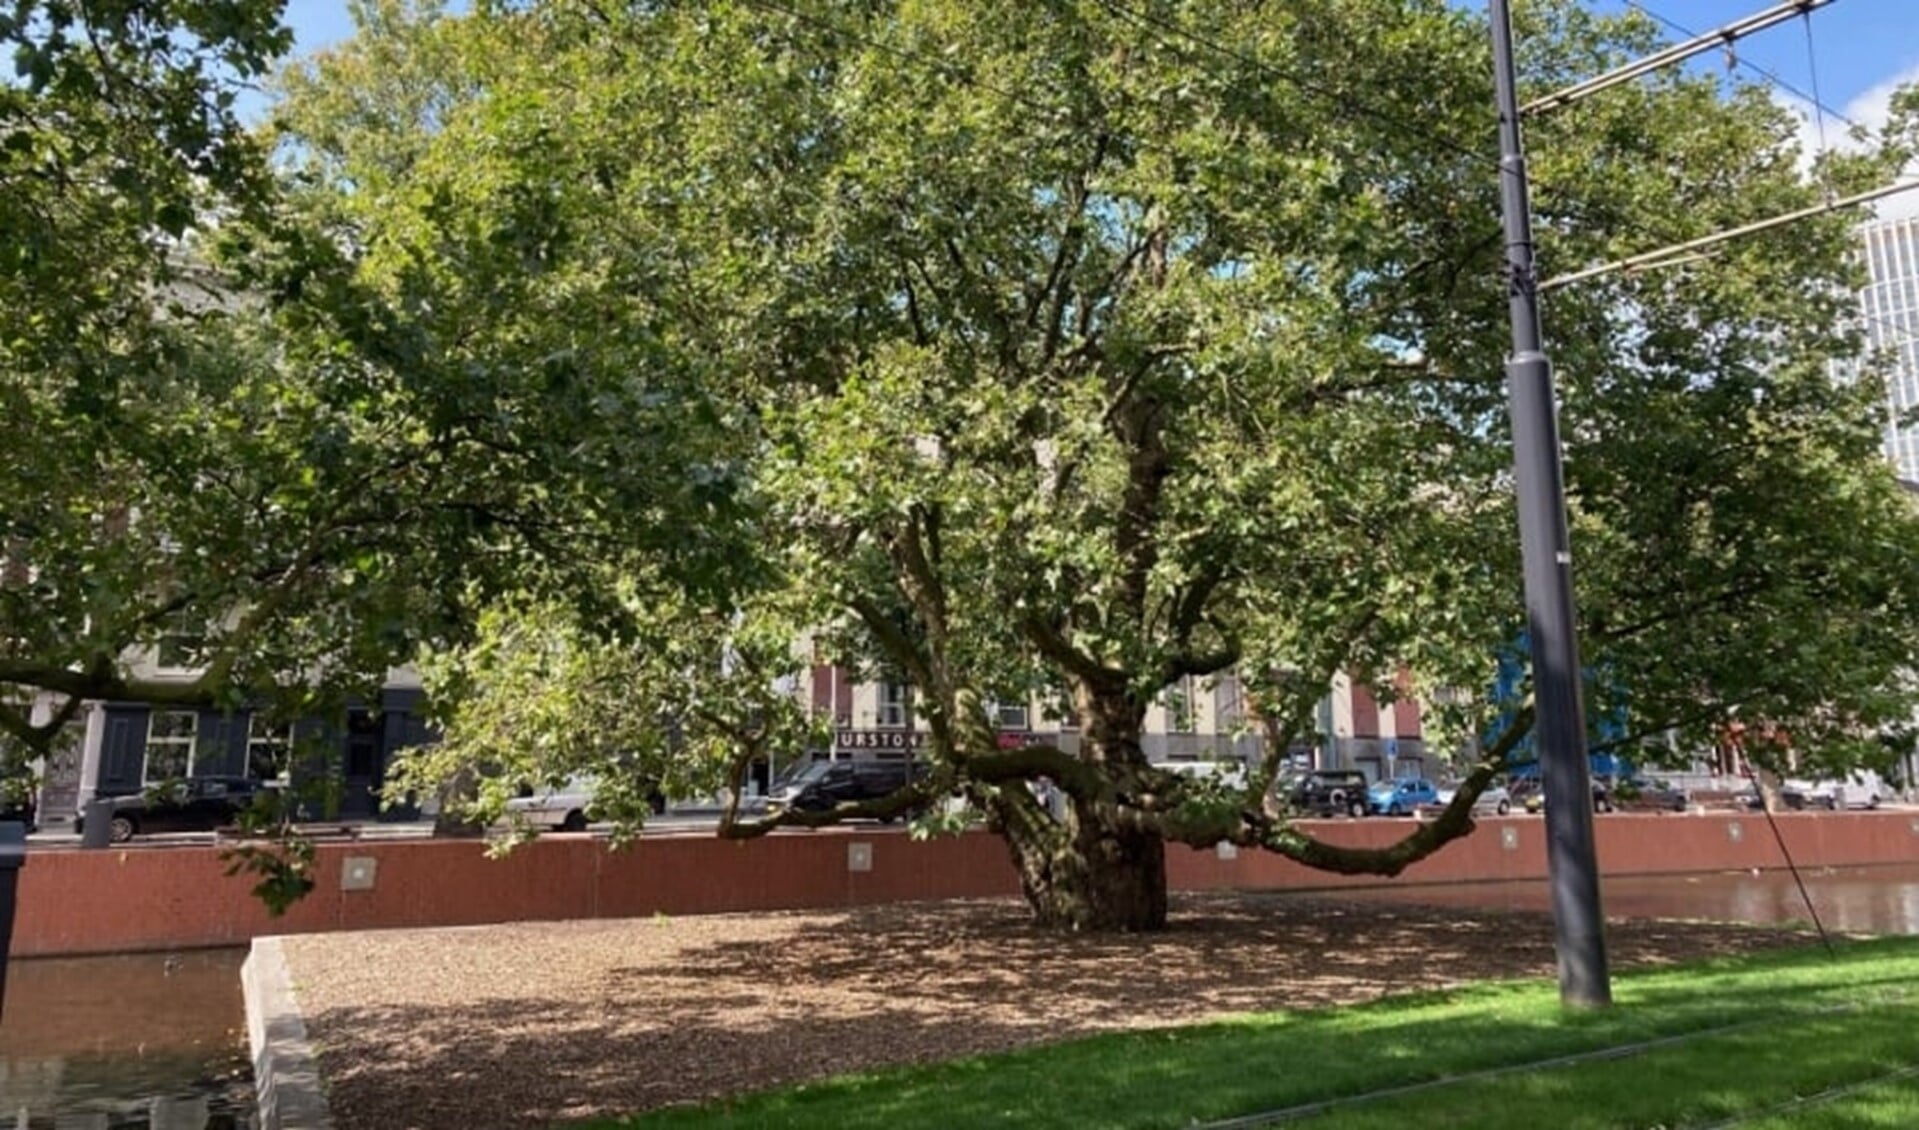 De Breytenbachboom aan de Westersingel is een van de twaalf genomineerde bomen in de Boom van het Jaar 2021 verkiezing. Foto: Fred Marree